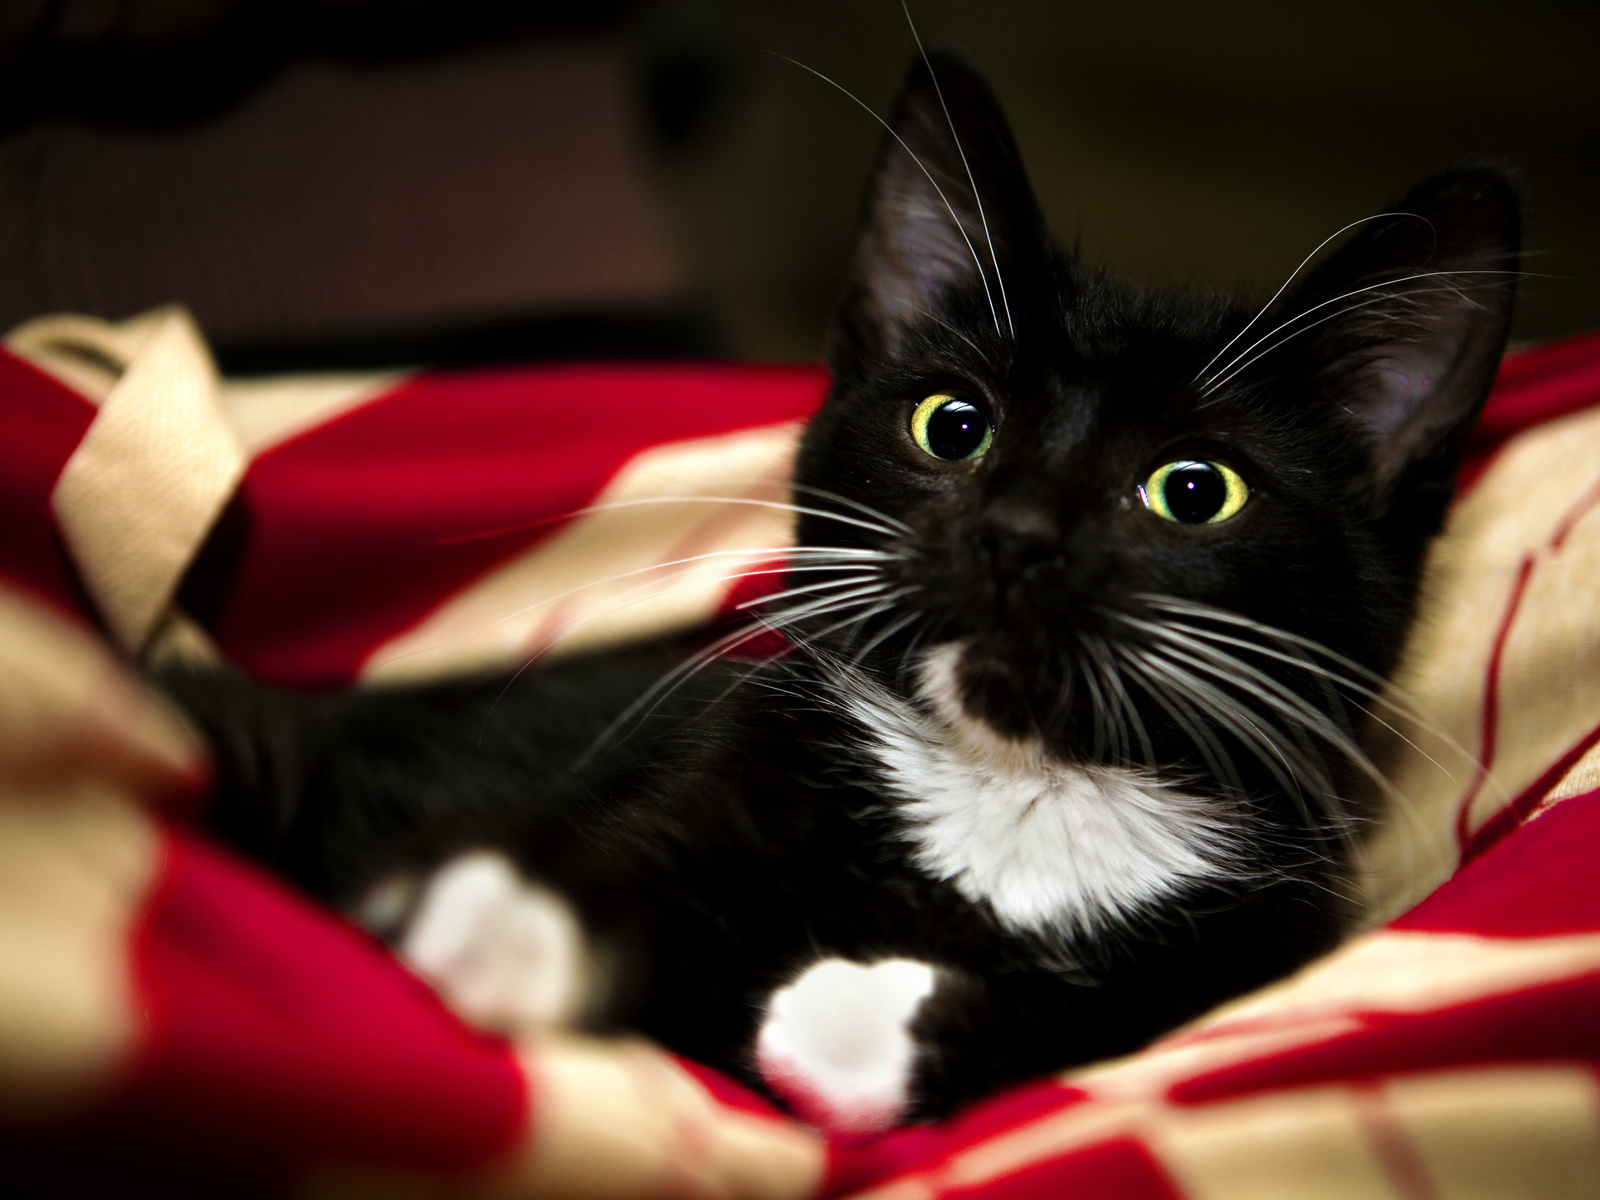 red, black, sweet, cat, kitten, pet, white, animal, blanket, paw